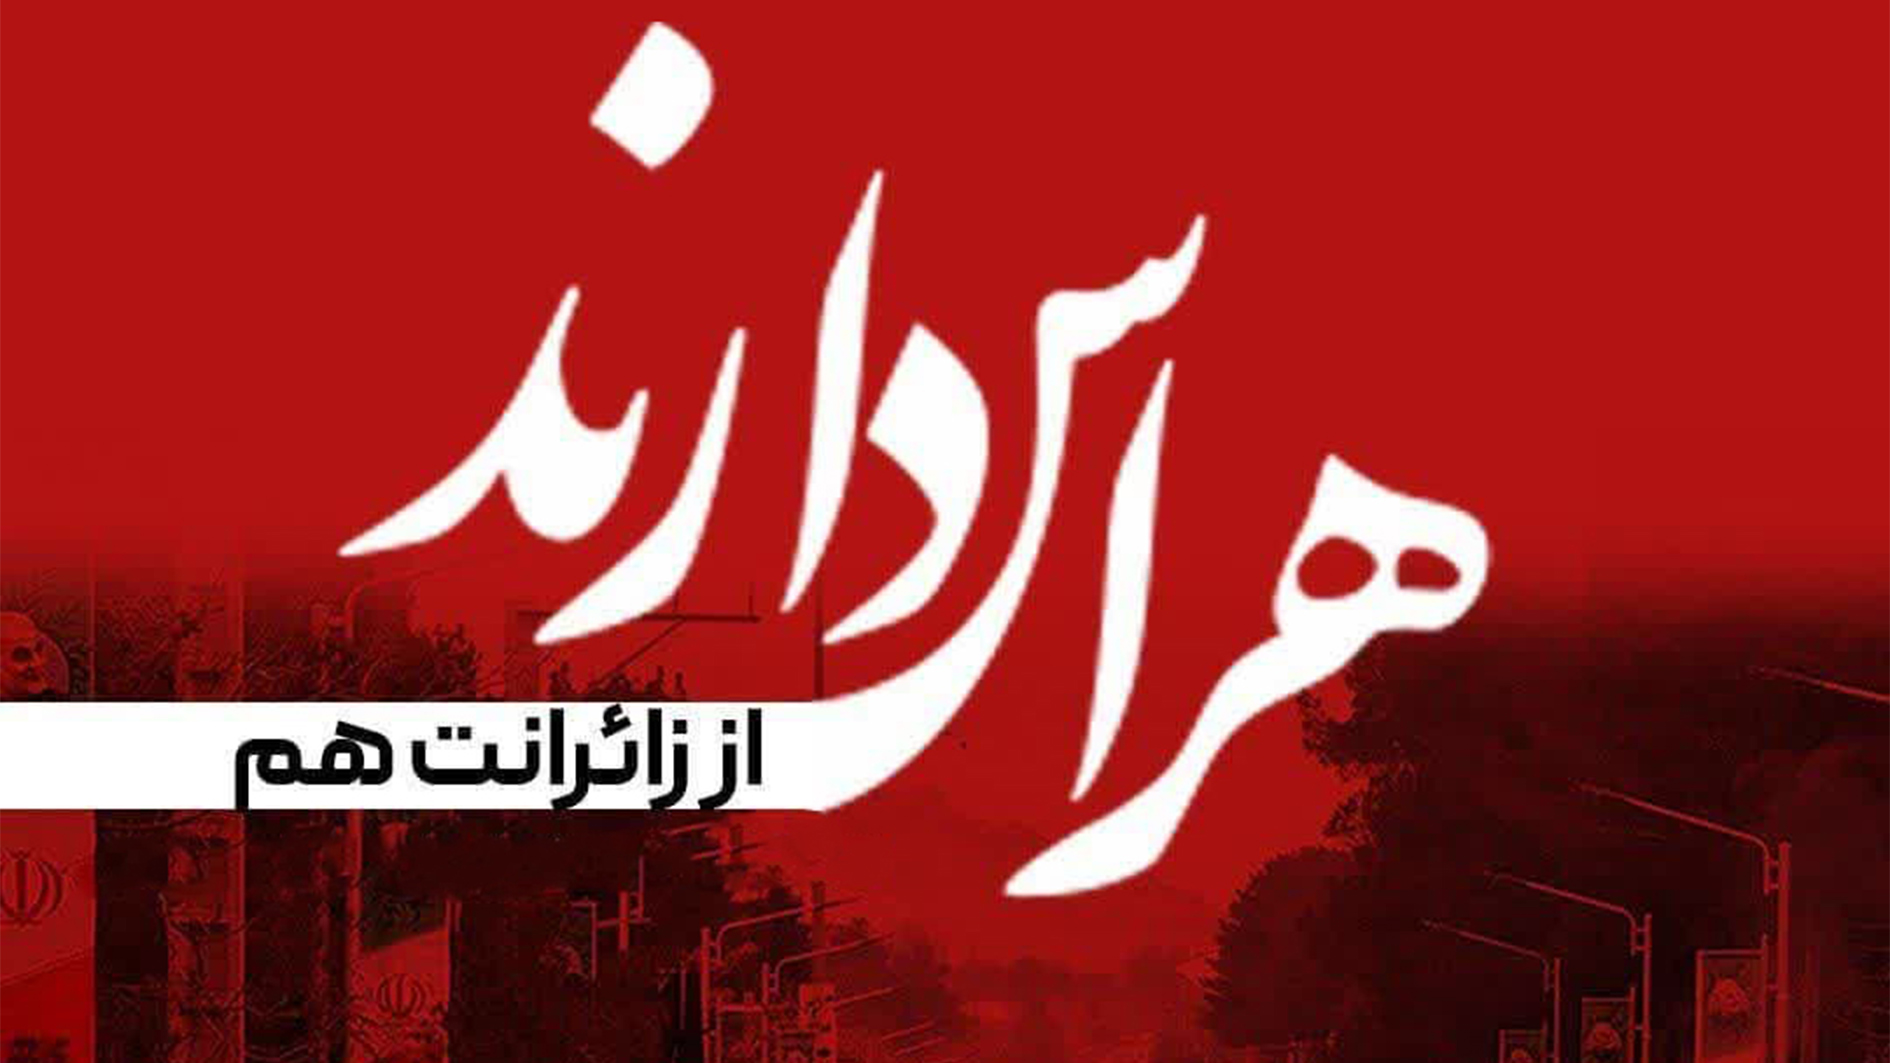 پیام تسلیت مدیرعامل شرکت آبان بسپار توسعه در پی حادثه تروریستی کرمان